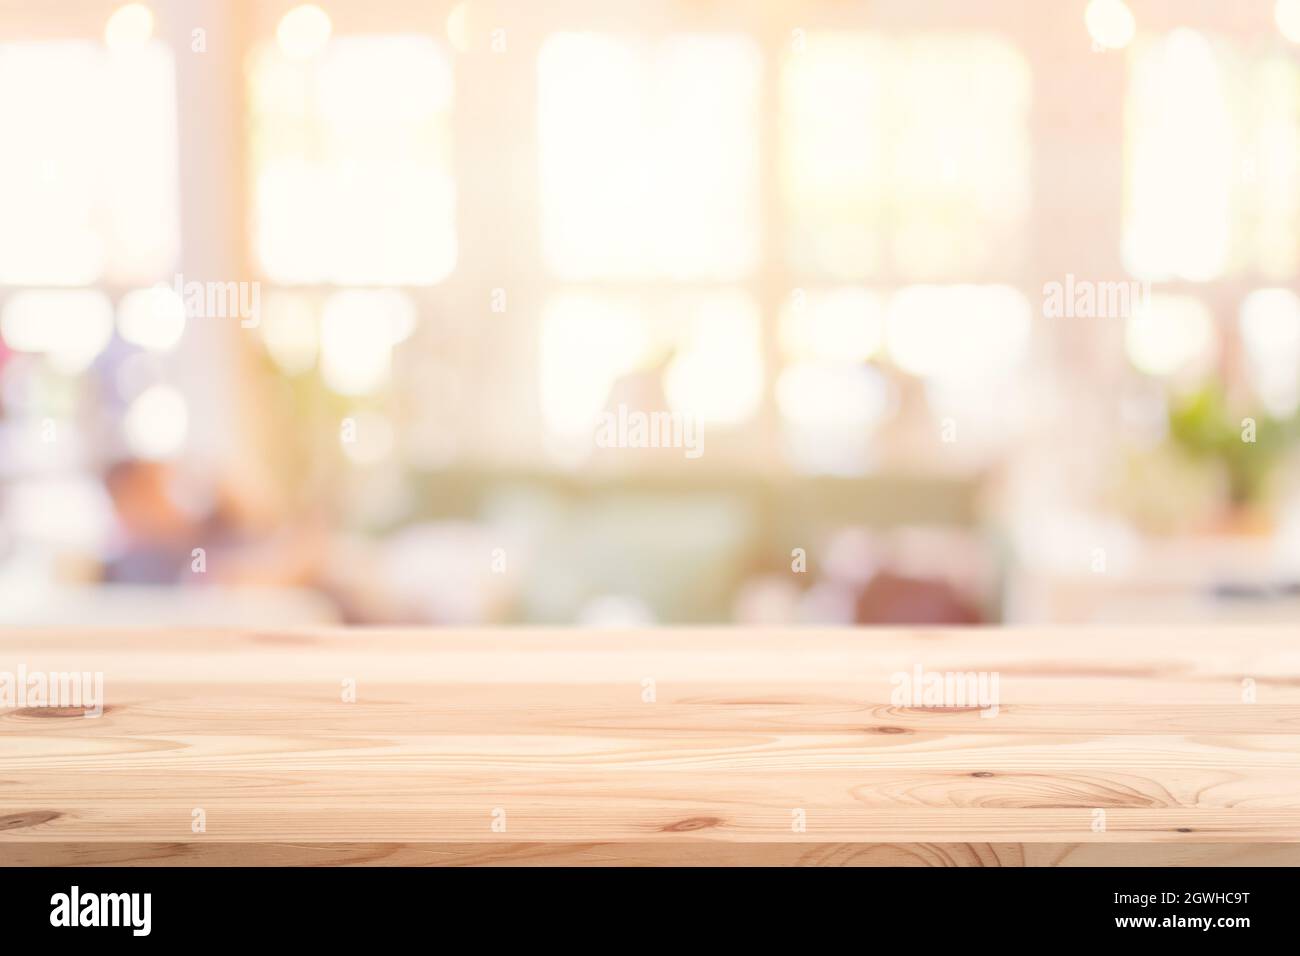 Hölzerne Tischplatte Vordergrund mit verschwommenem Indoor Cafe Shop und Restaurant Hintergrund für Produkte Display Montage Werbebanner. Stockfoto